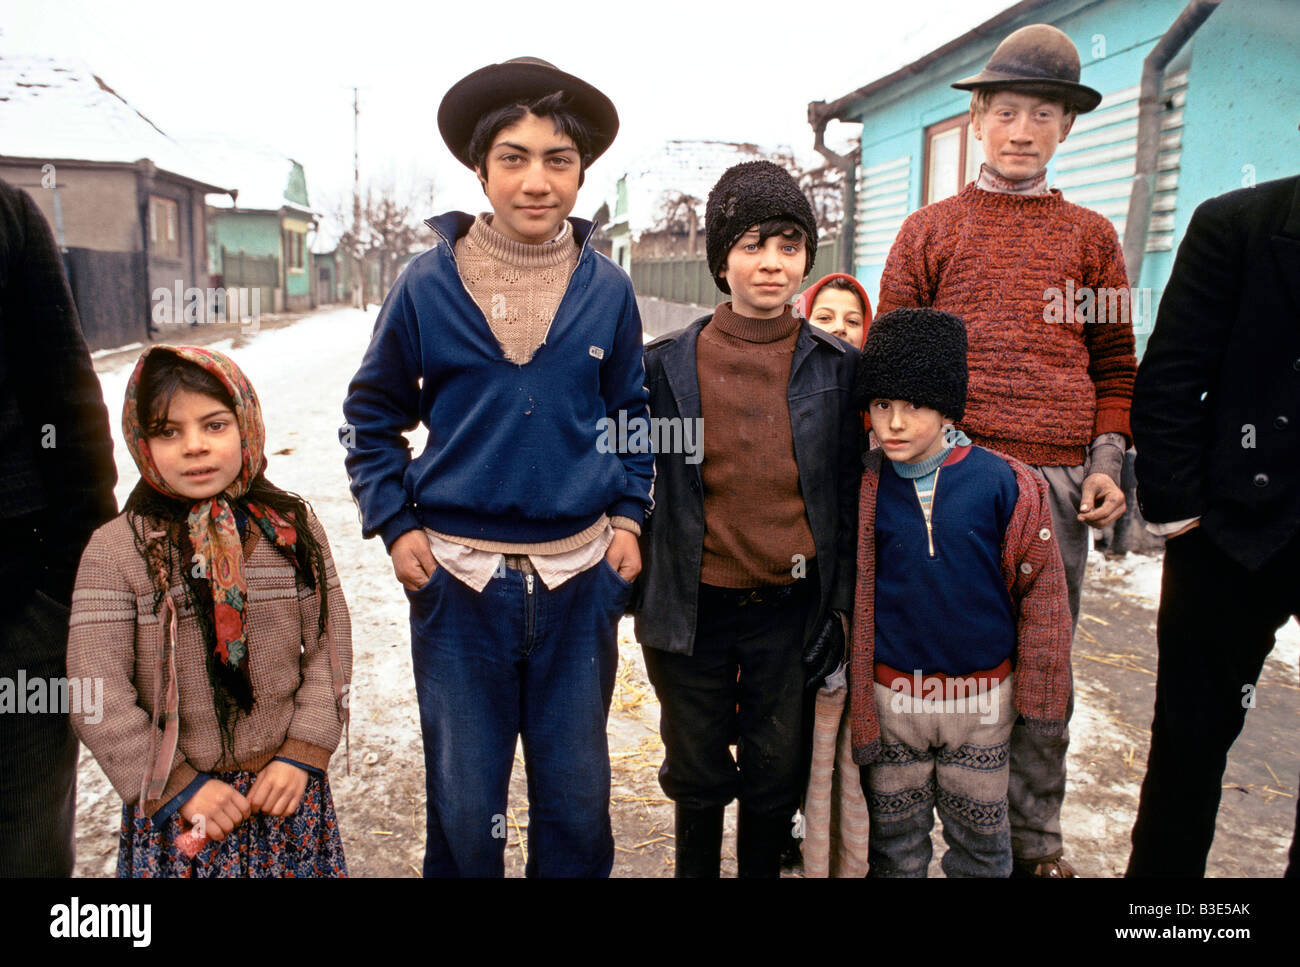 Gruppo di giovani RUMENE I VIAGGIATORI IN PIEDI IN UN VILLAGGIO nei pressi di Sibu Transilvania 1990 Foto Stock